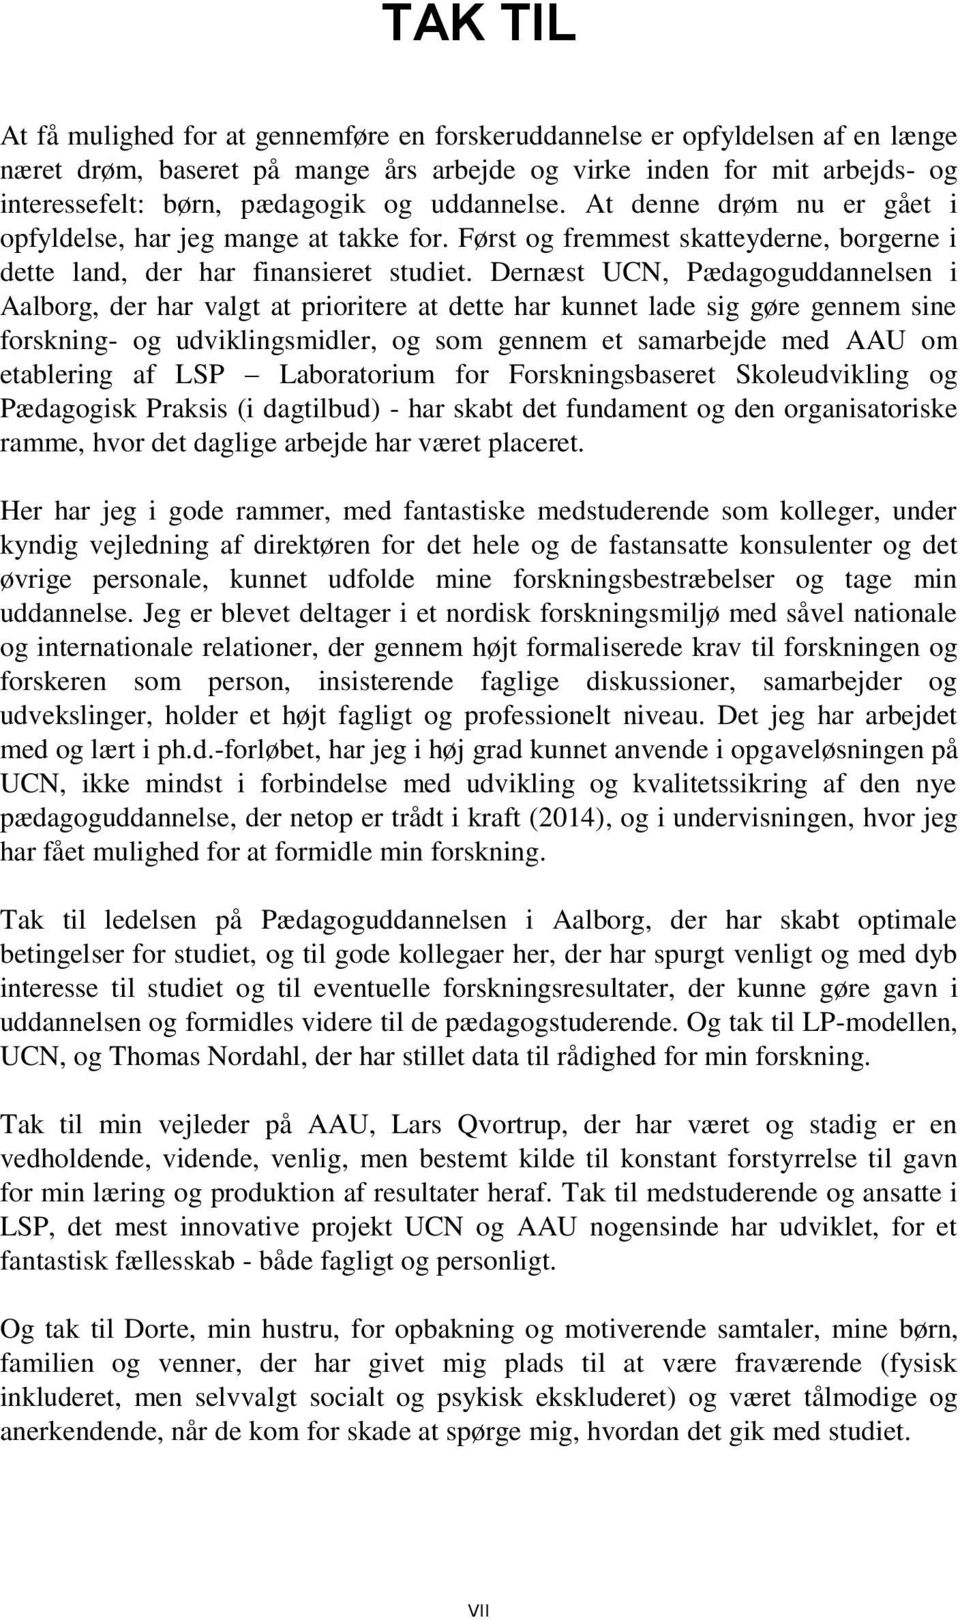 Dernæst UCN, Pædagoguddannelsen i Aalborg, der har valgt at prioritere at dette har kunnet lade sig gøre gennem sine forskning- og udviklingsmidler, og som gennem et samarbejde med AAU om etablering